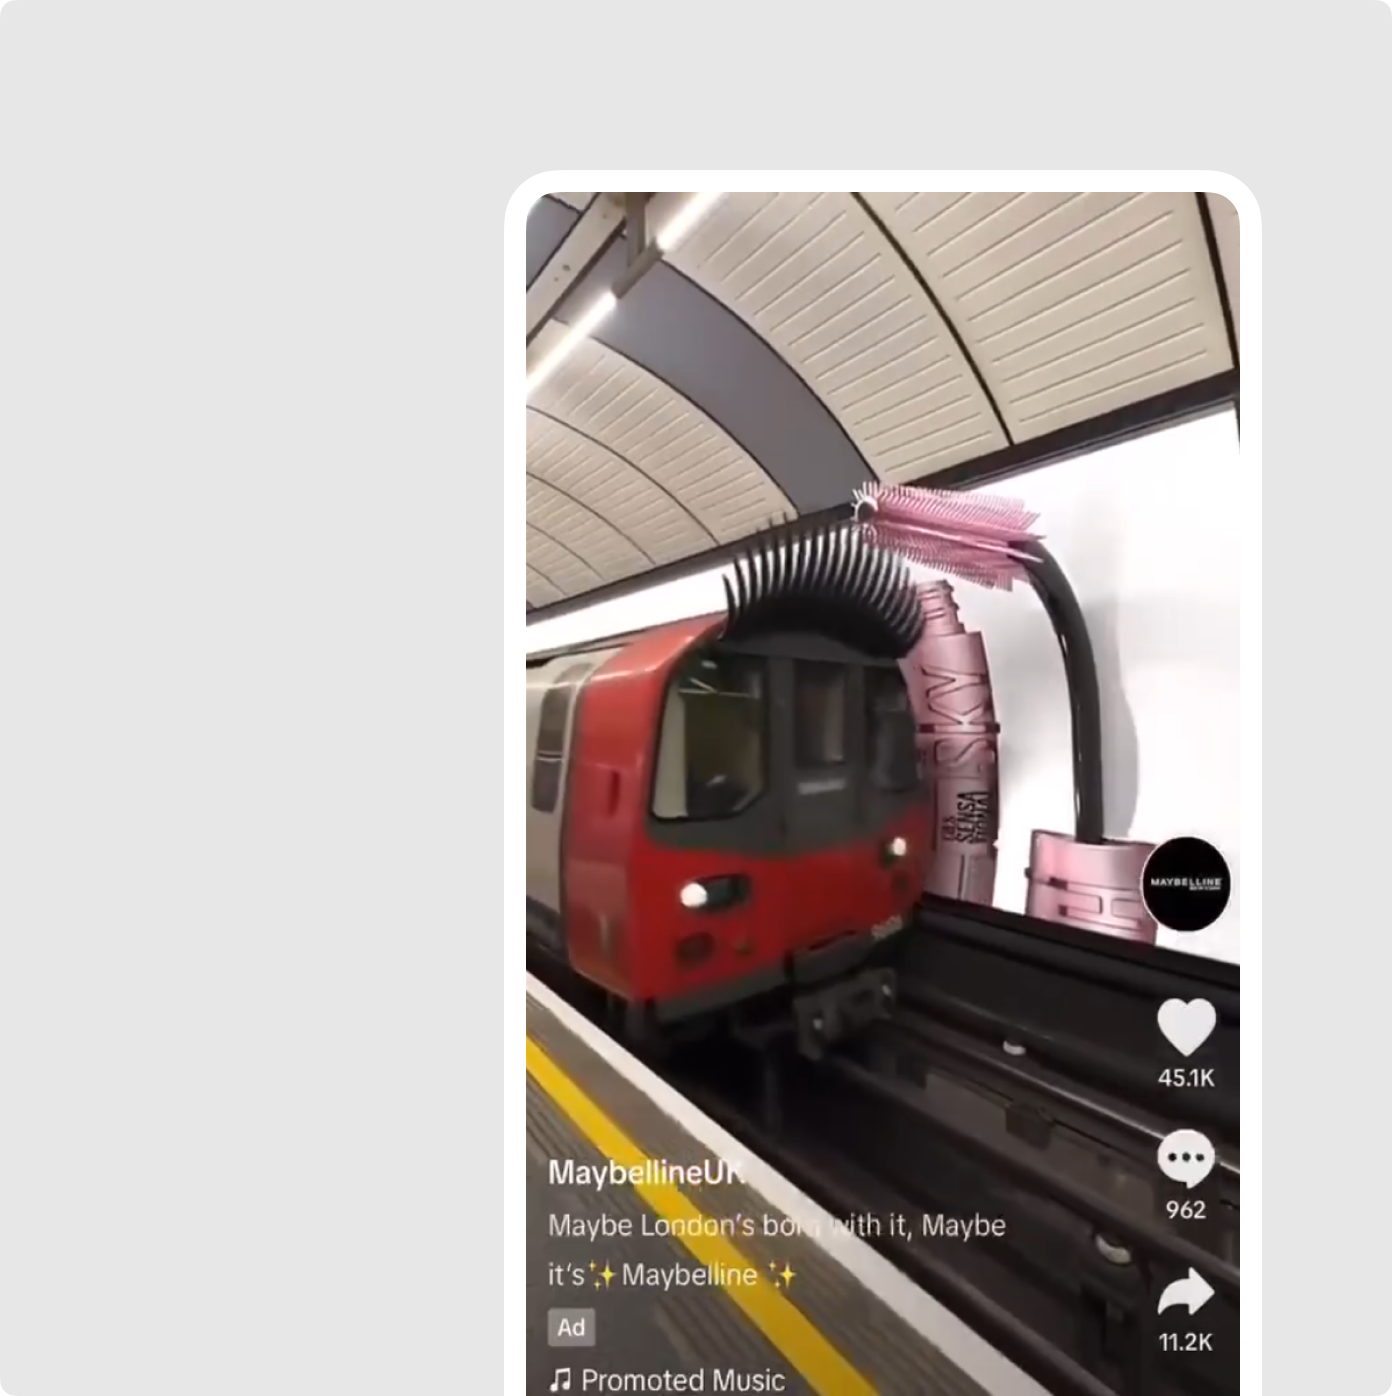 Для промо новой туши Maybelline поезду в лондонском метро нарастили реснички